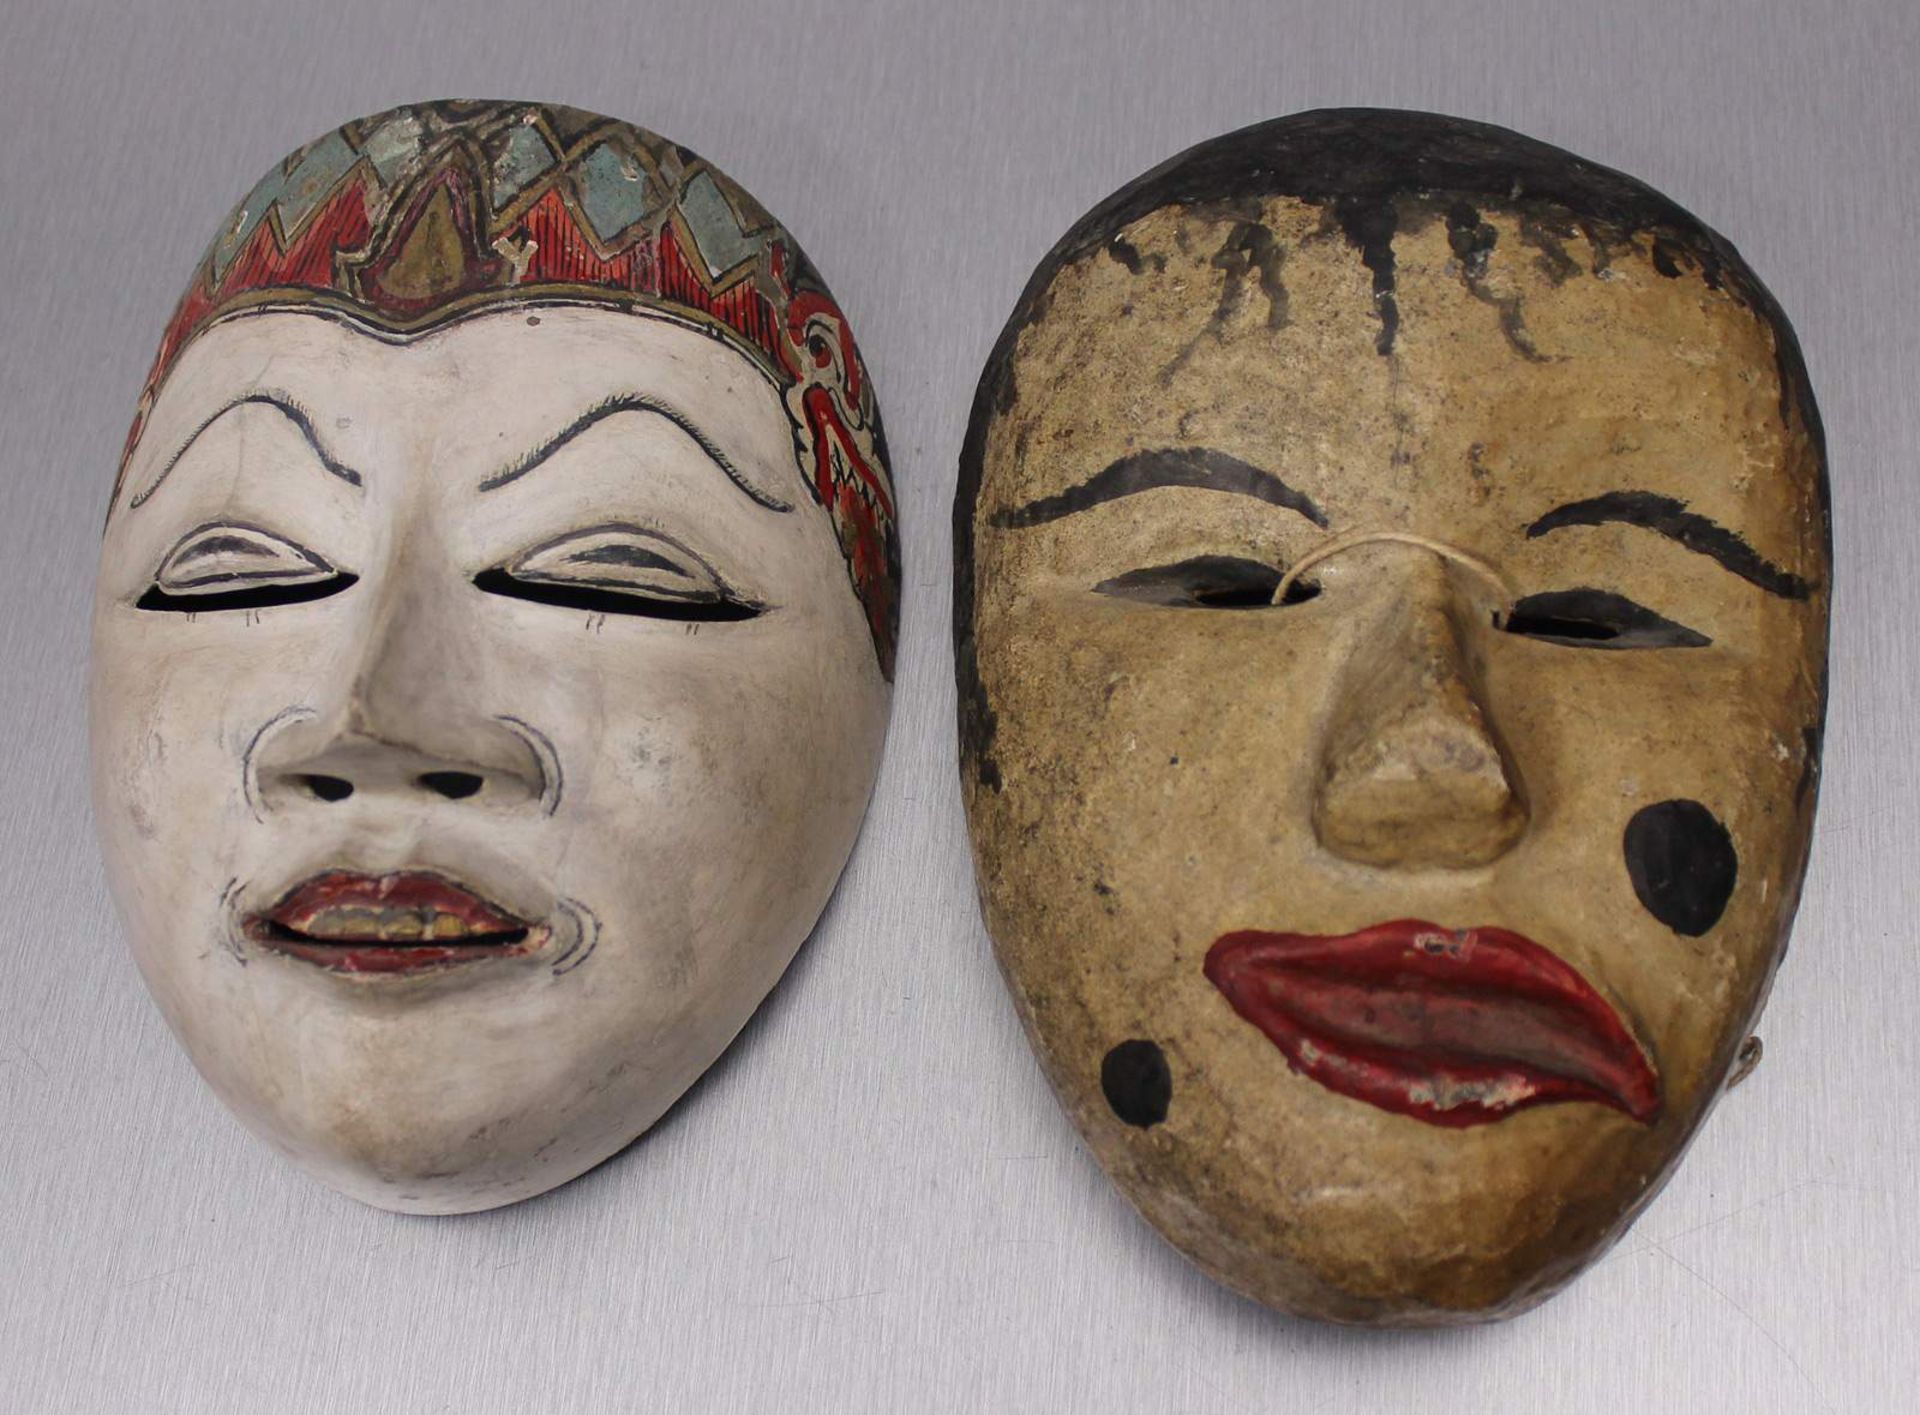 Zwei Wayang-Topeng-Masken.Holz und Farben. Die Masken wurden bei Tanzaufführungen getragen, die